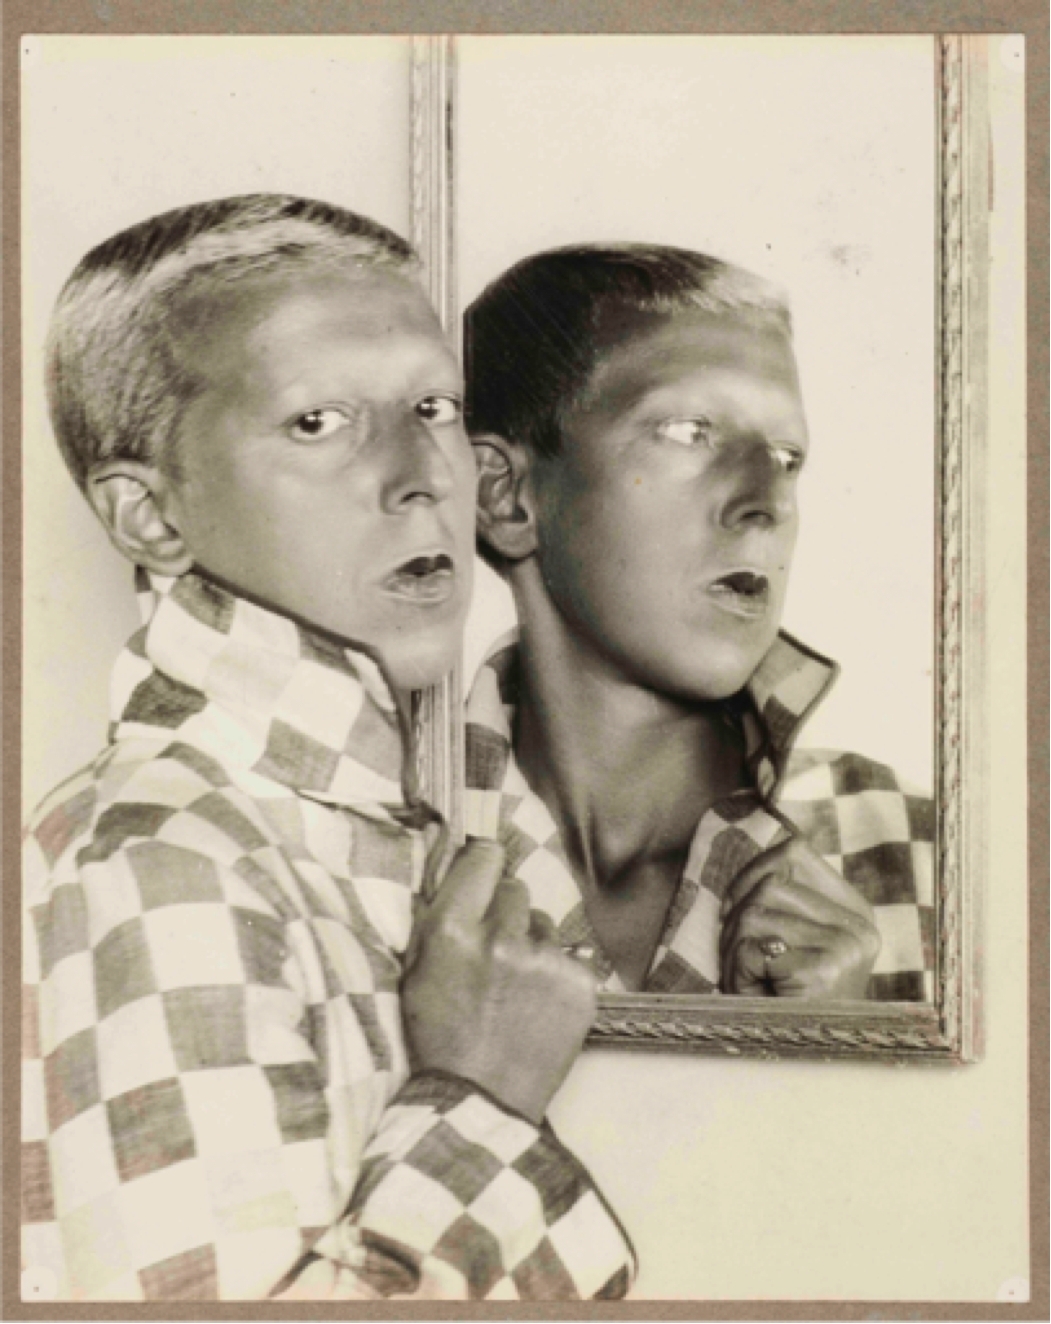 Claude Cahun, Untitled, Self portrait, 1928 ca., photograph, gelatin silver print, 30 x 23,8 cm. Courtesy of Musée d’arts de Nantes